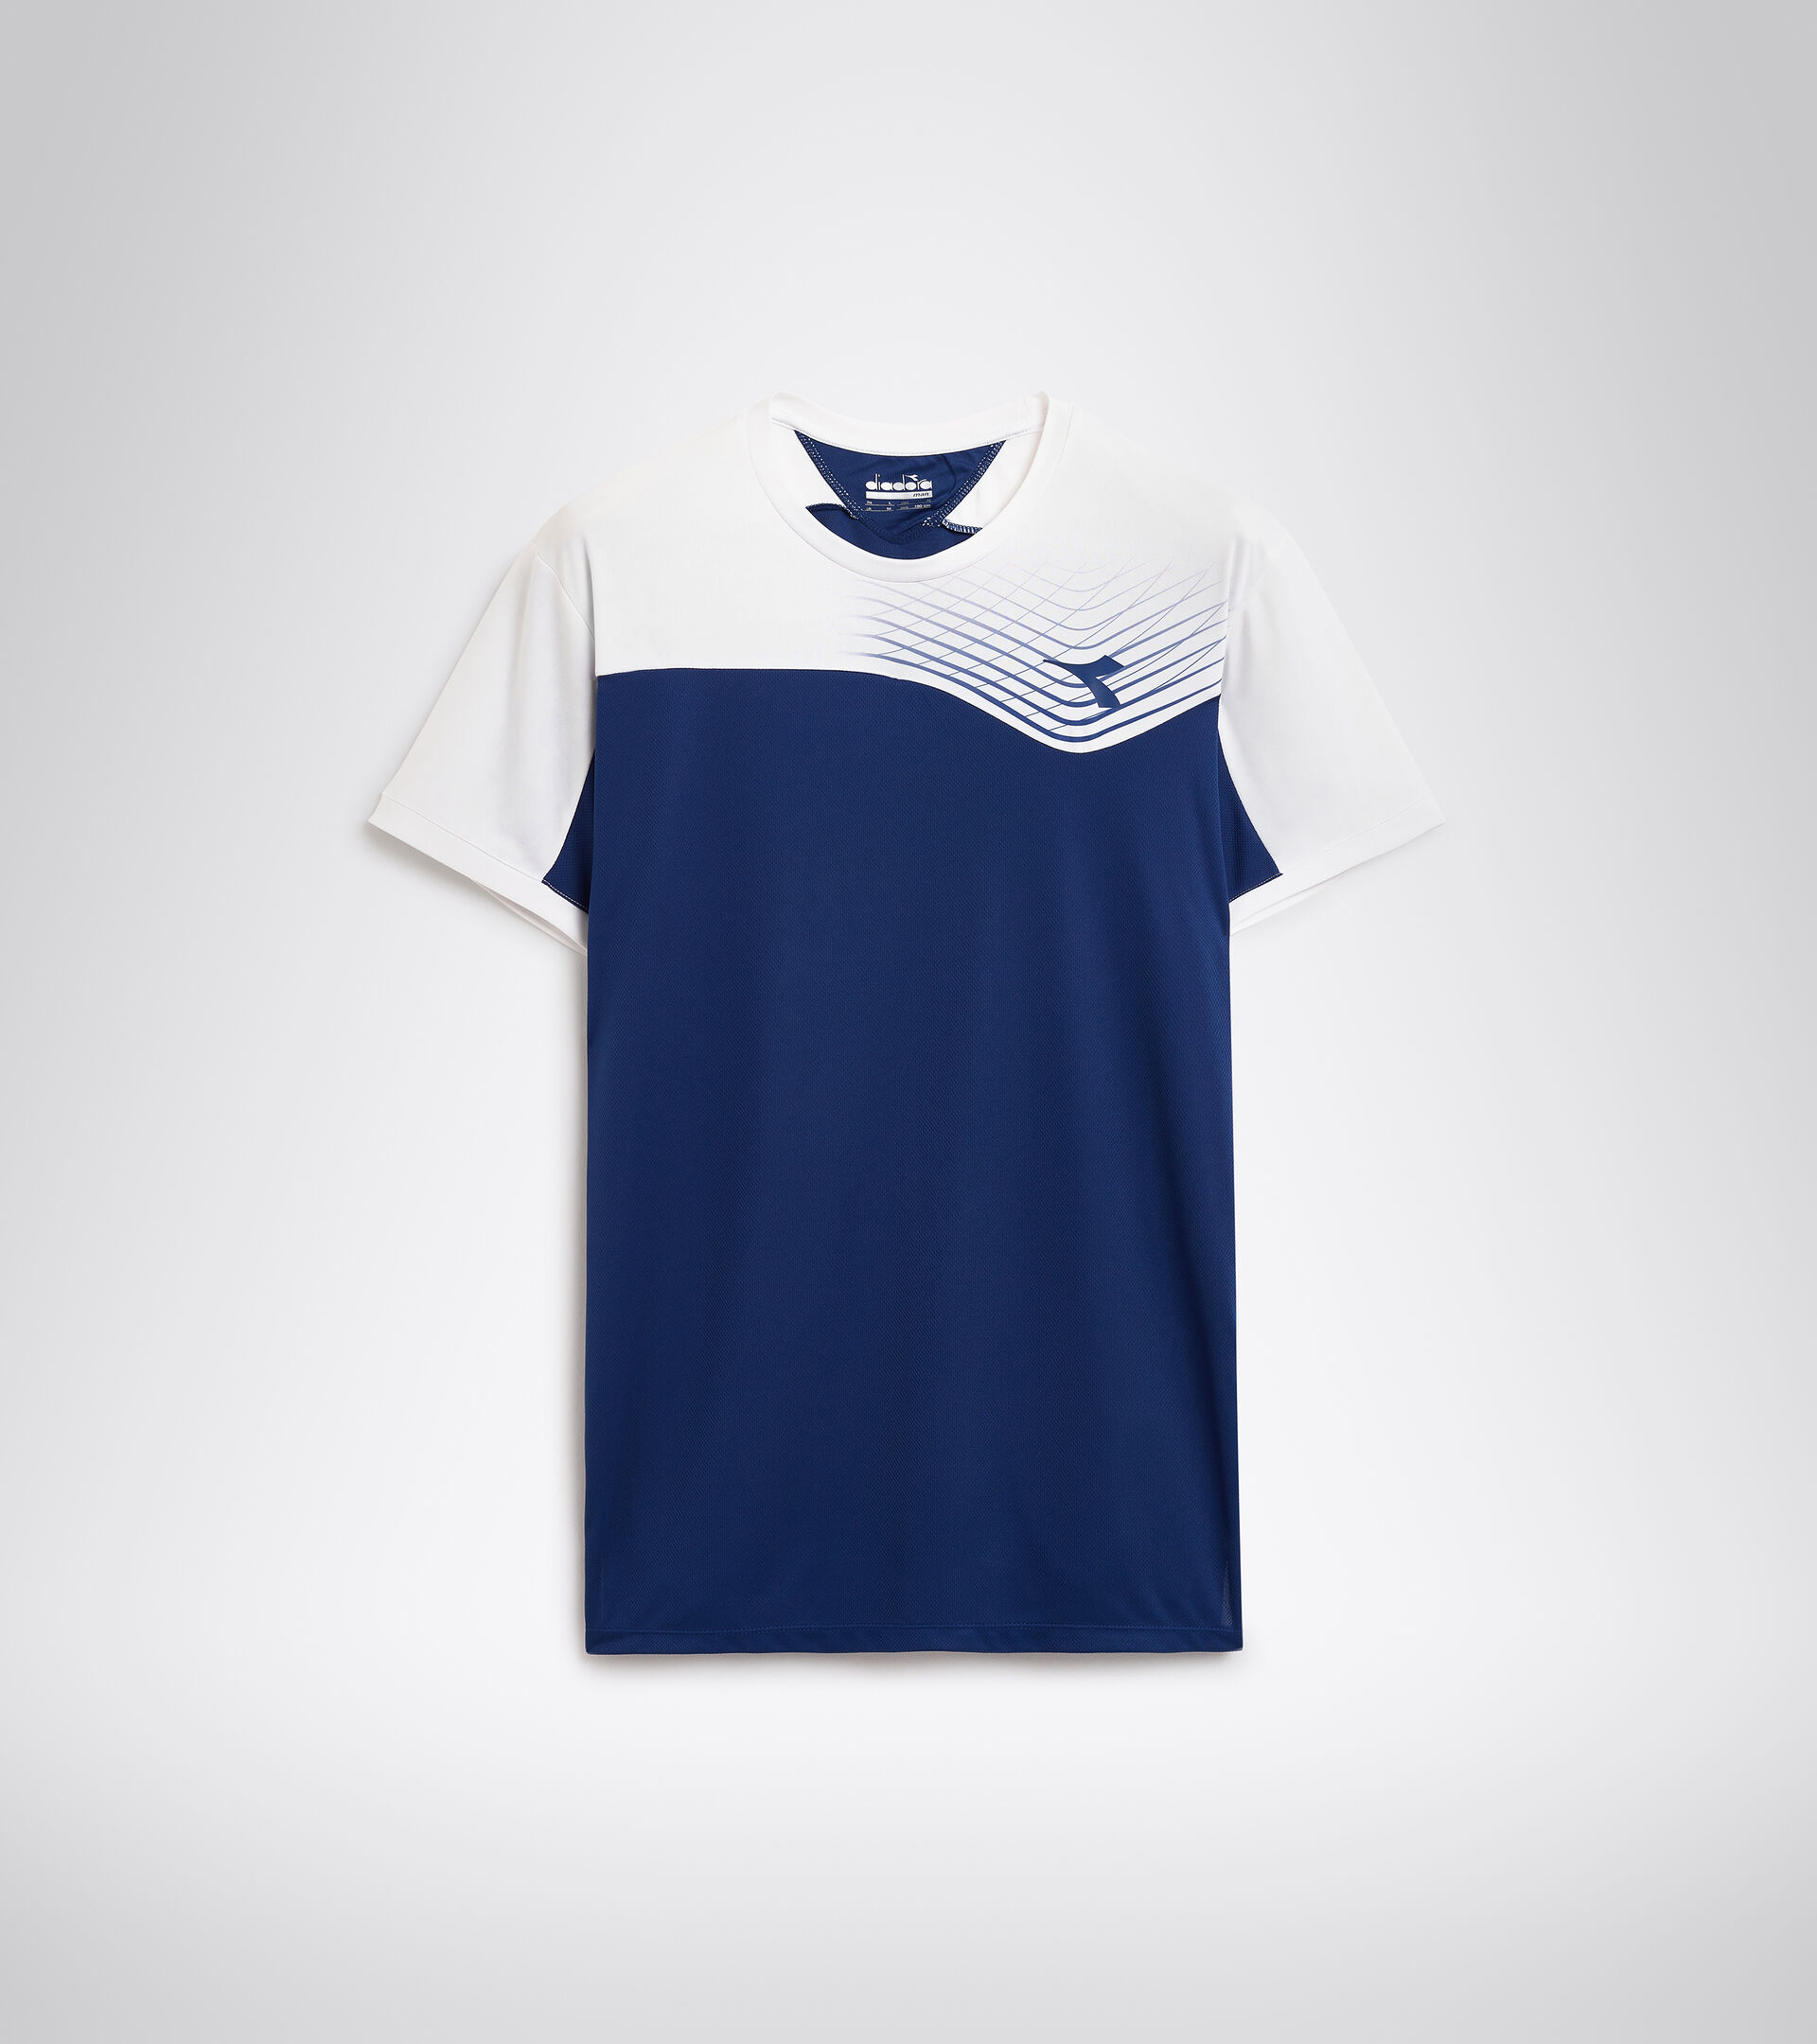 T-SHIRT COURT Camiseta de tenis - Hombre - Tienda en línea Diadora US